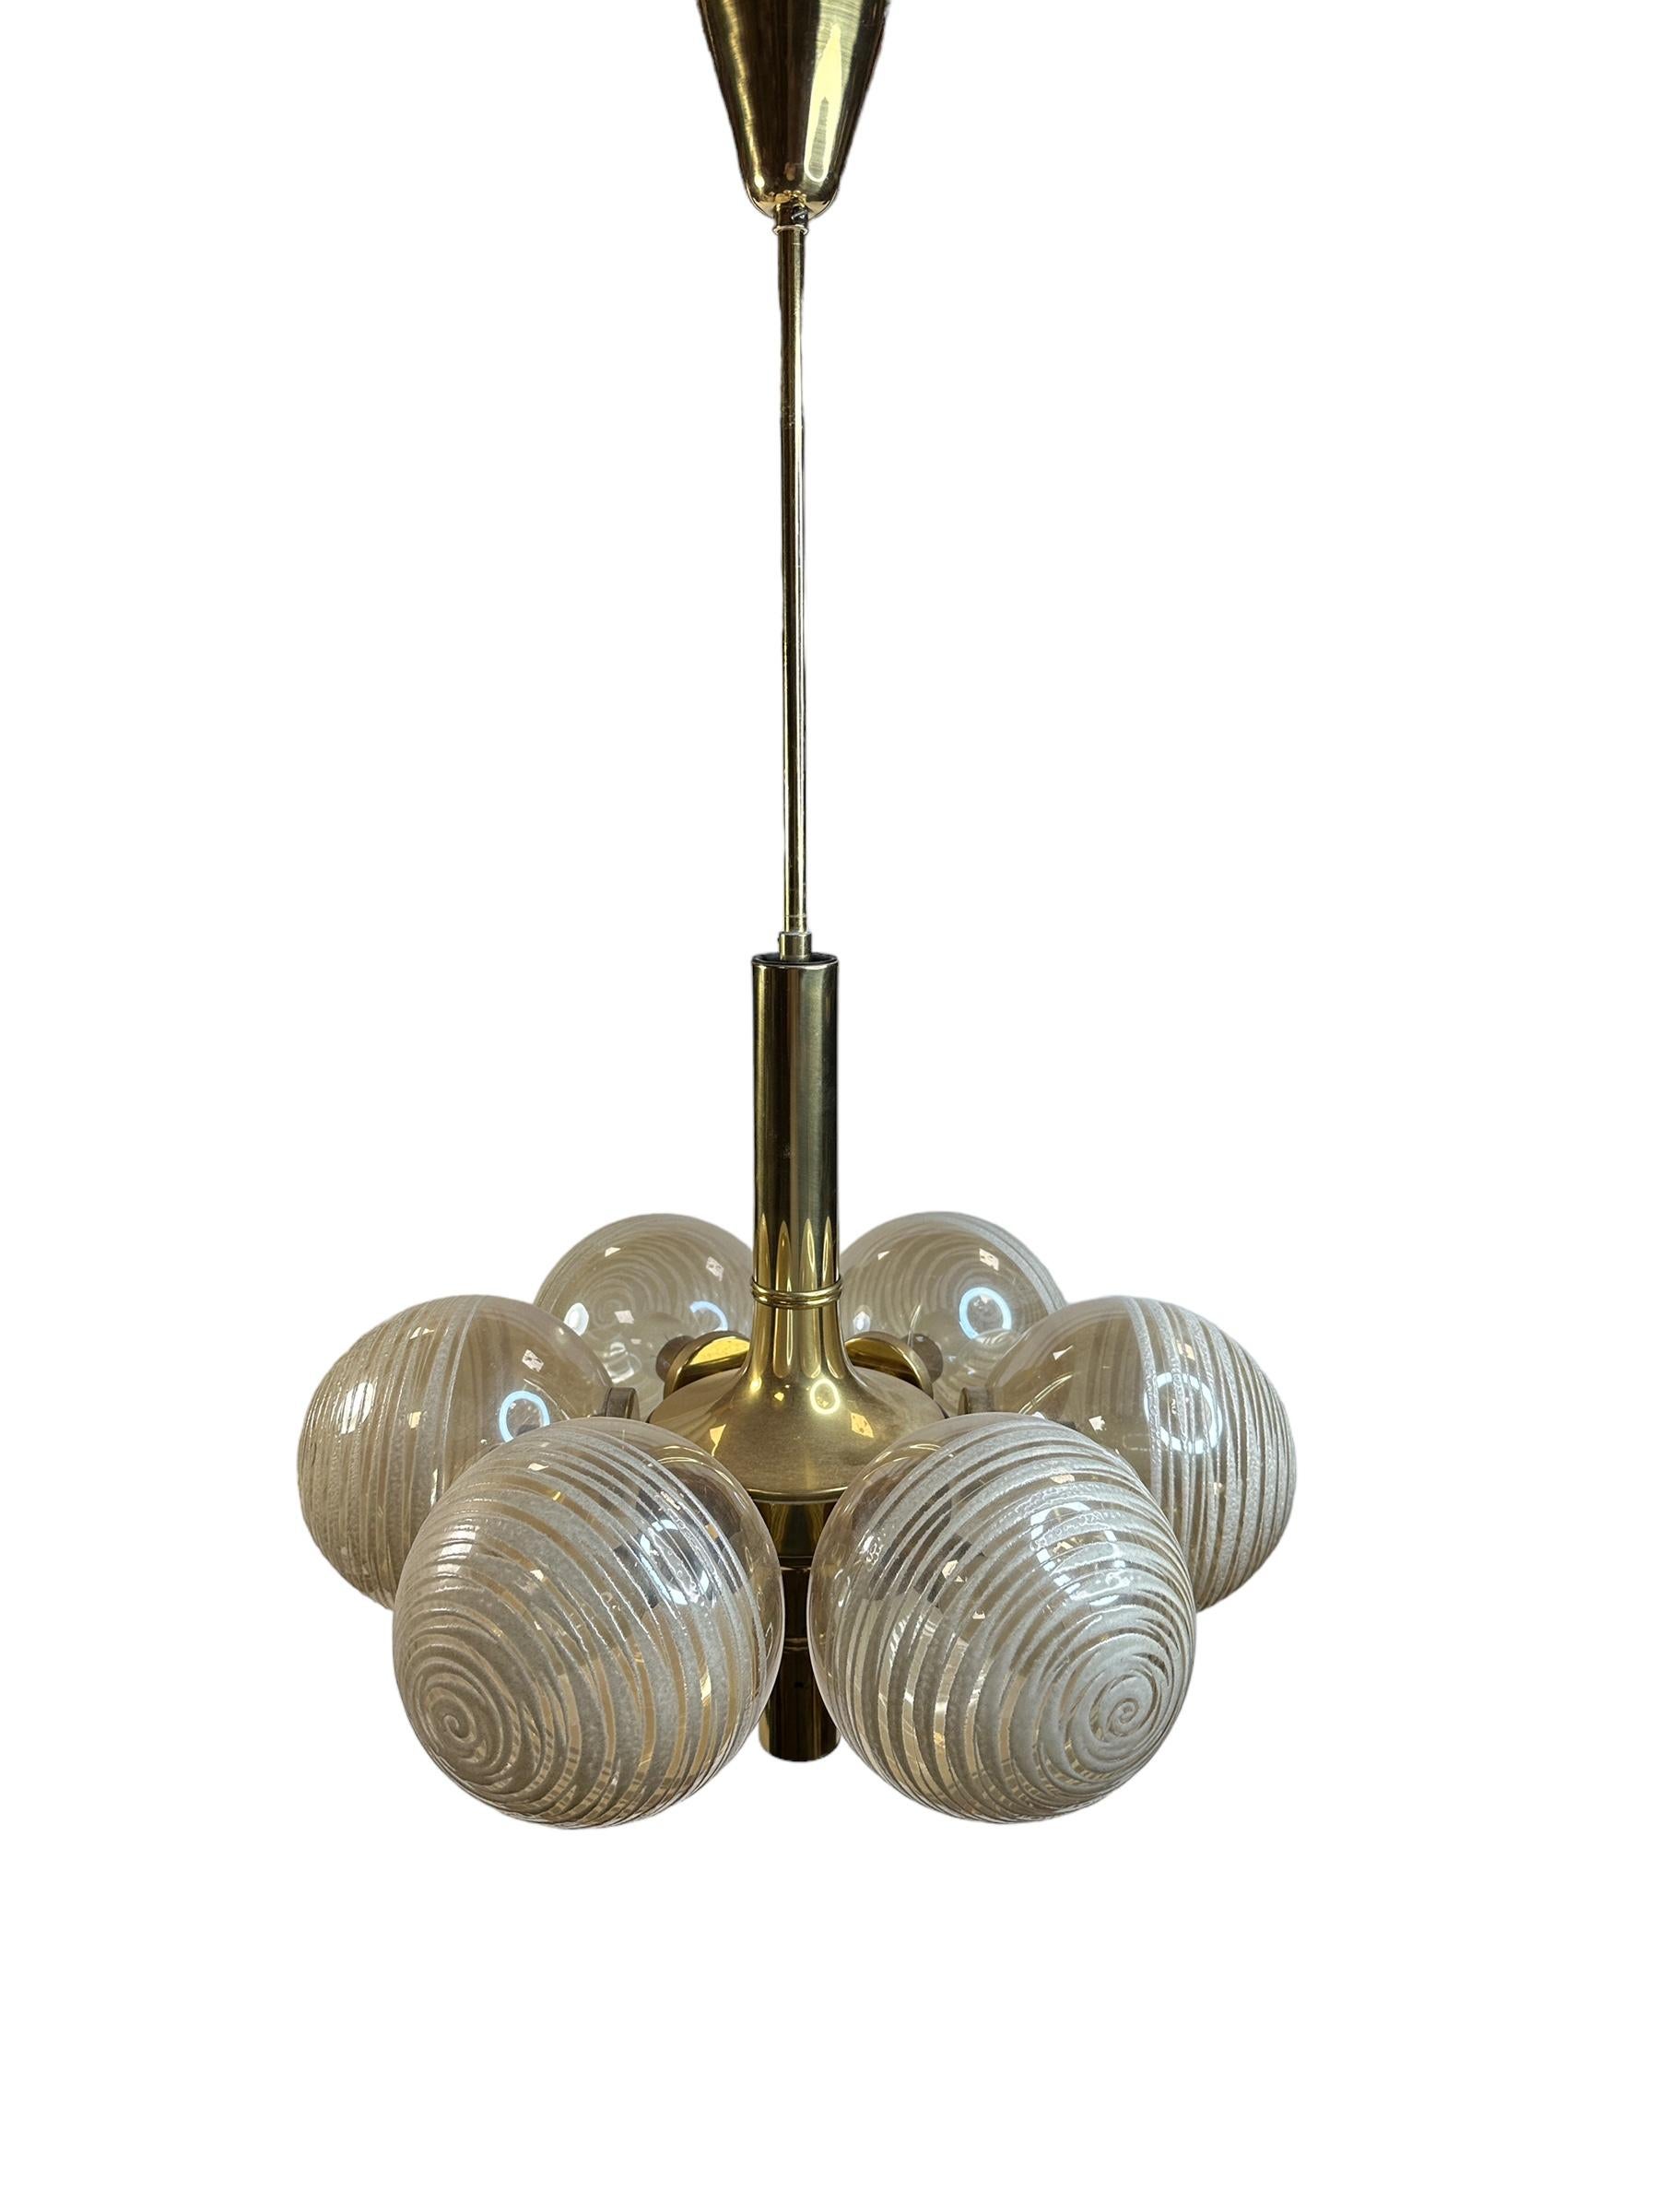 Metal 6 Light Sputnik Orbit Space Age Brass Swirl Glass Ball Chandelier Germany, 1970s For Sale